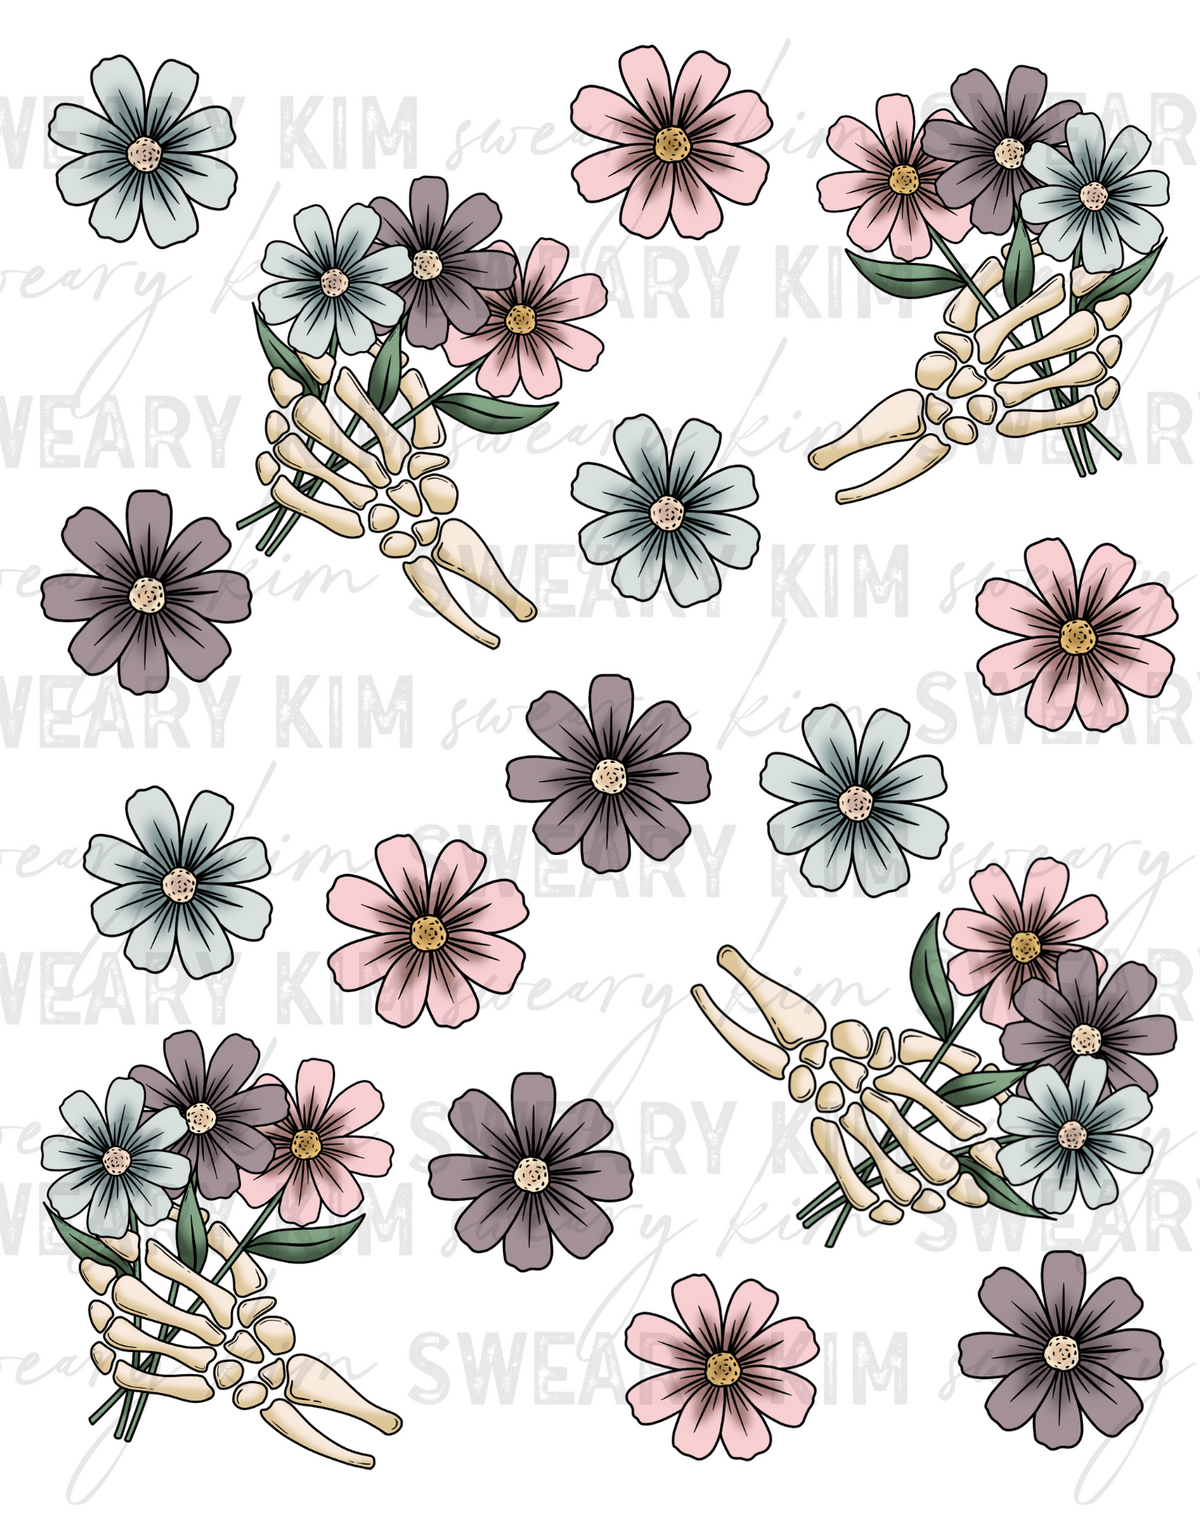 Skellie Hand Florals UV Dtf Element Sheet